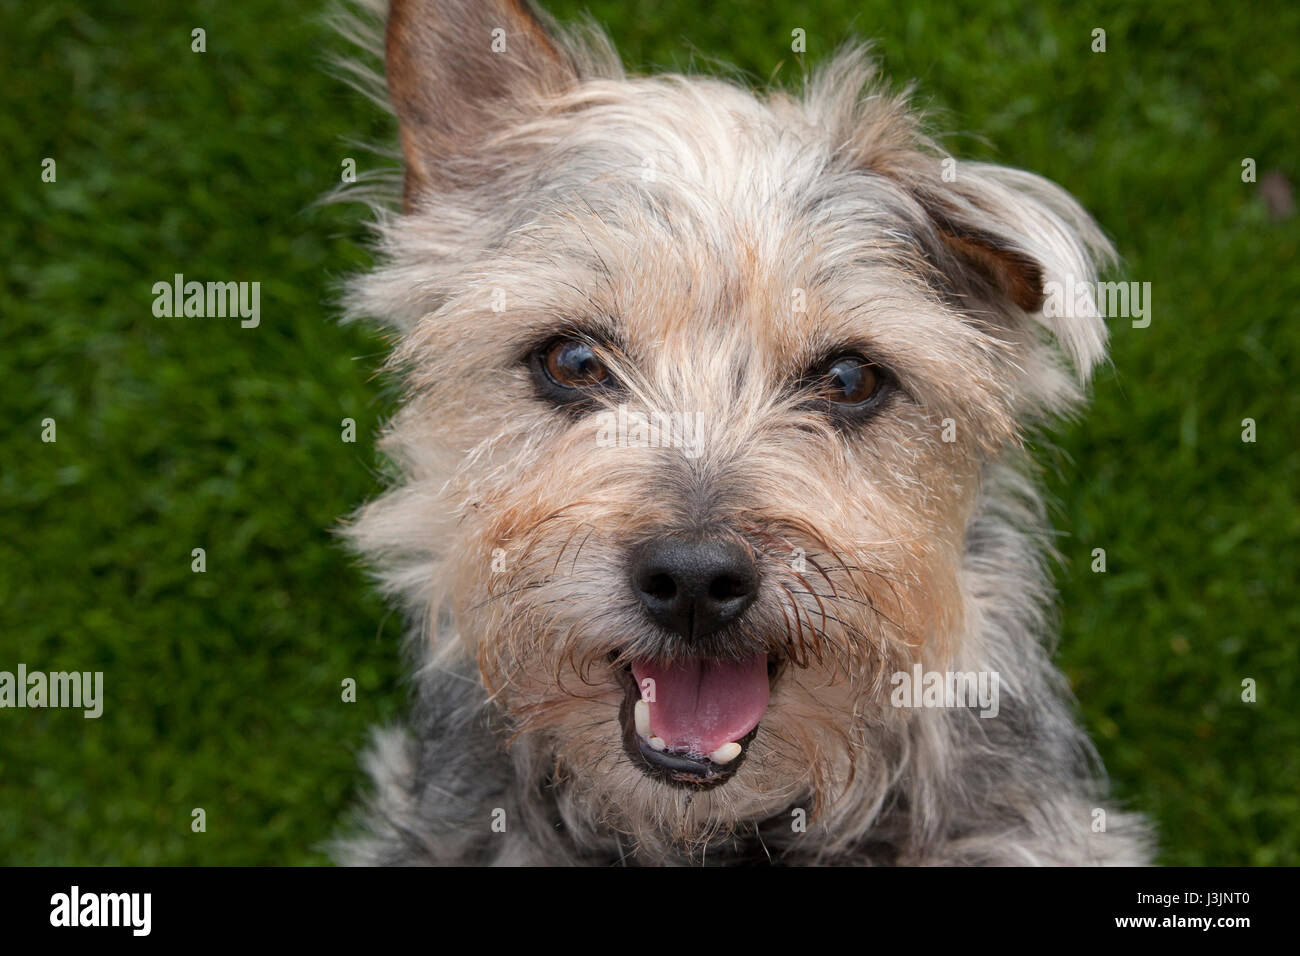 border terrier cross yorkshire terrier